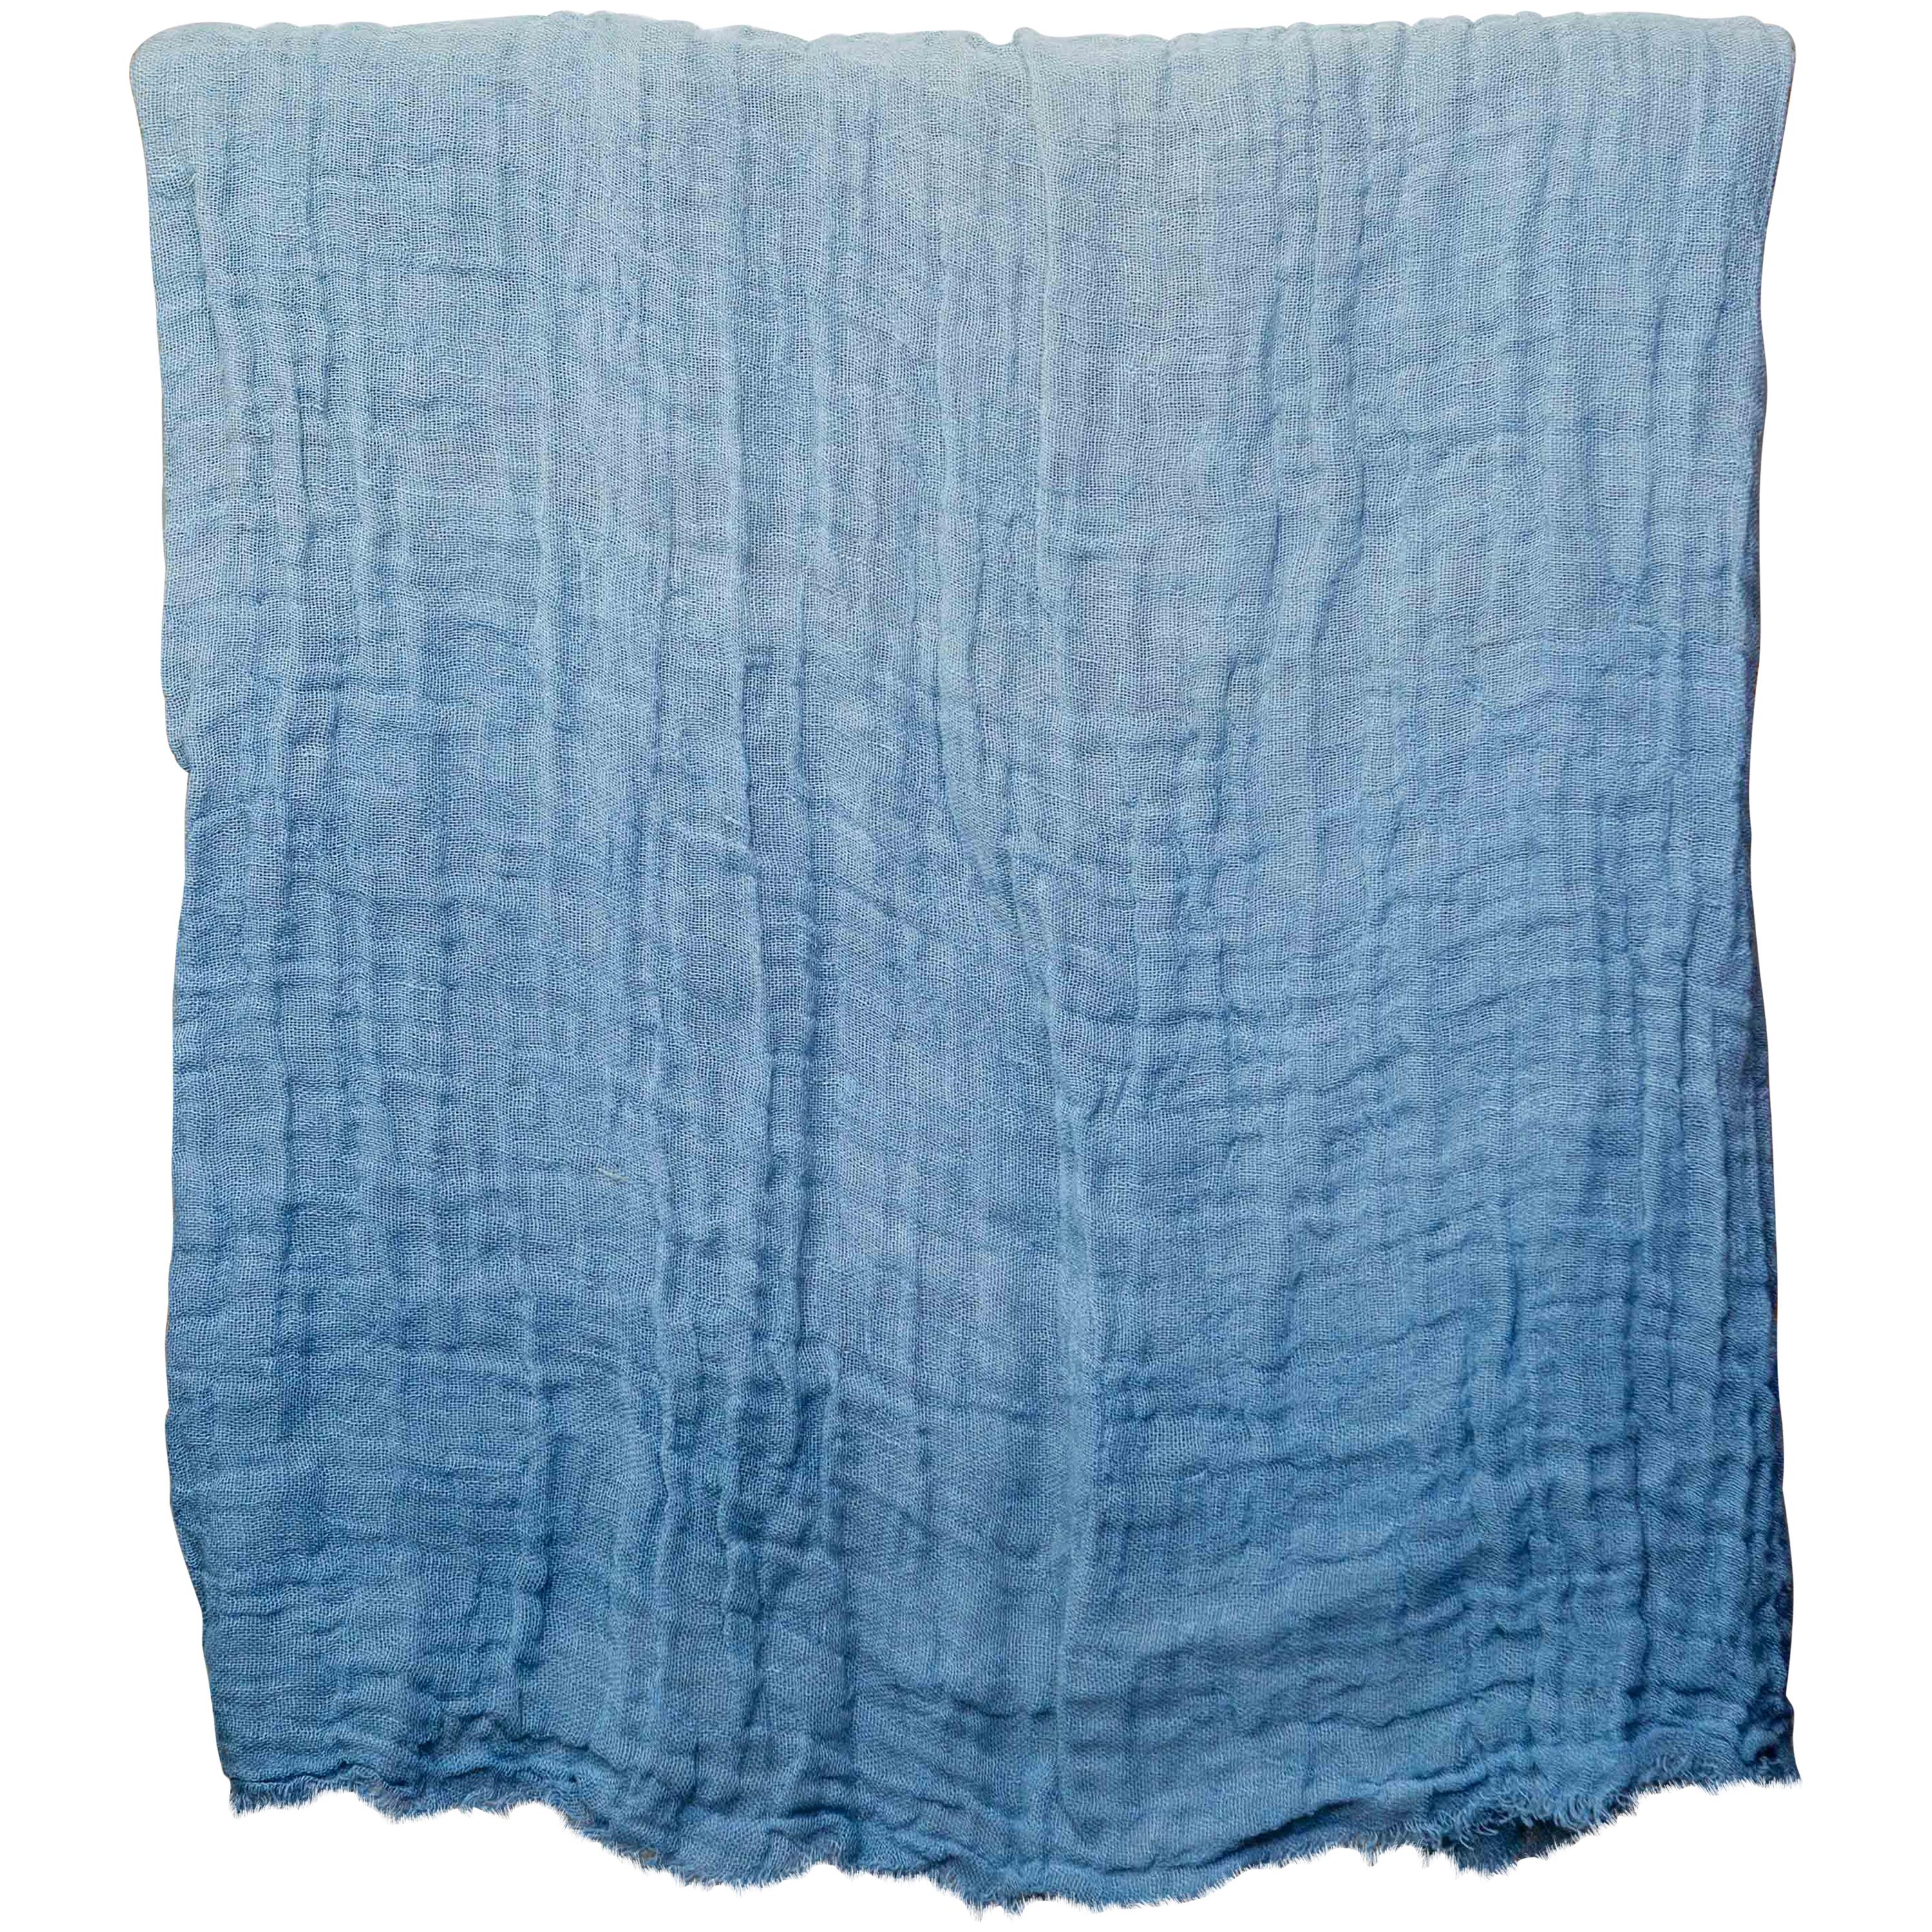 Hand Painted Open-Weave Linen Throw in Blue Tones, in Stock